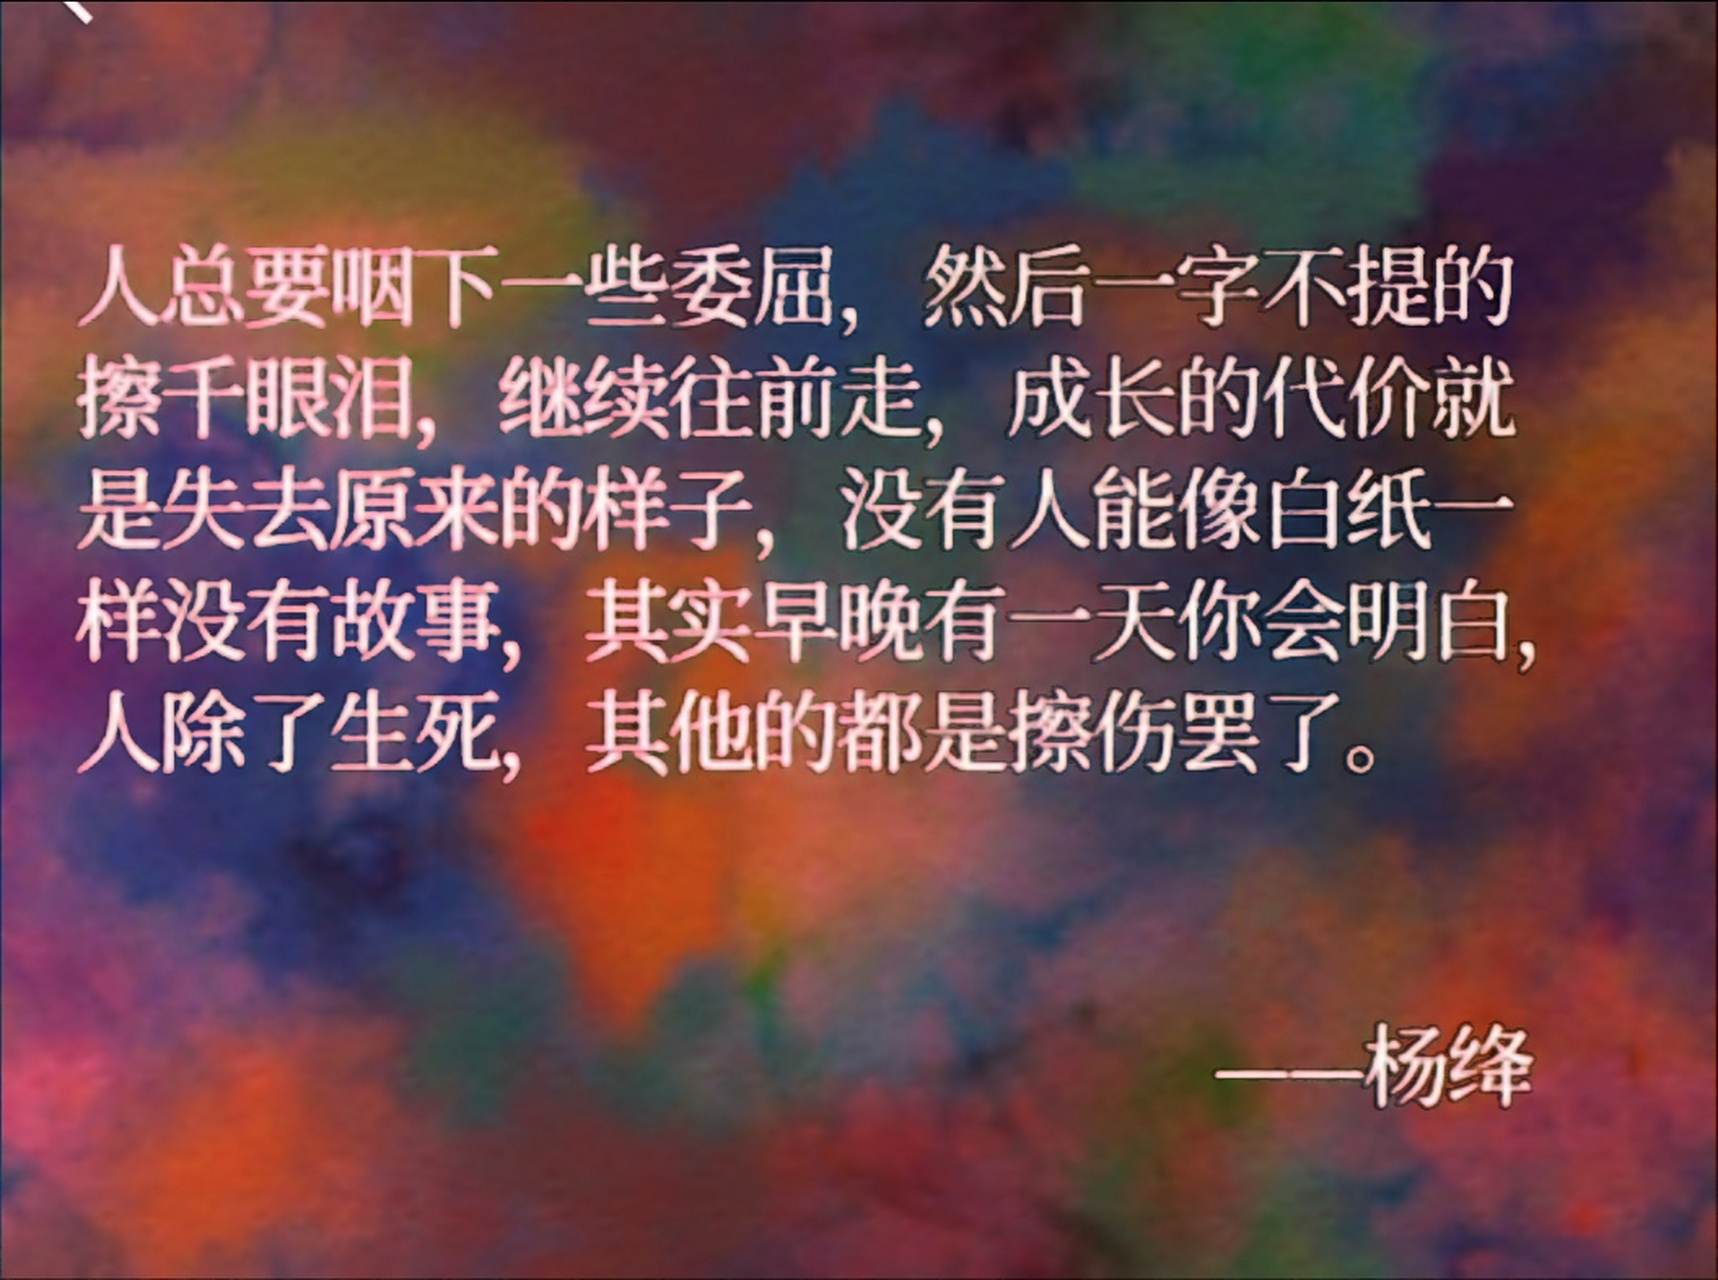 很喜欢杨绛的这段话: 成长的代价就是失去原来的样子, 没有人能像白纸